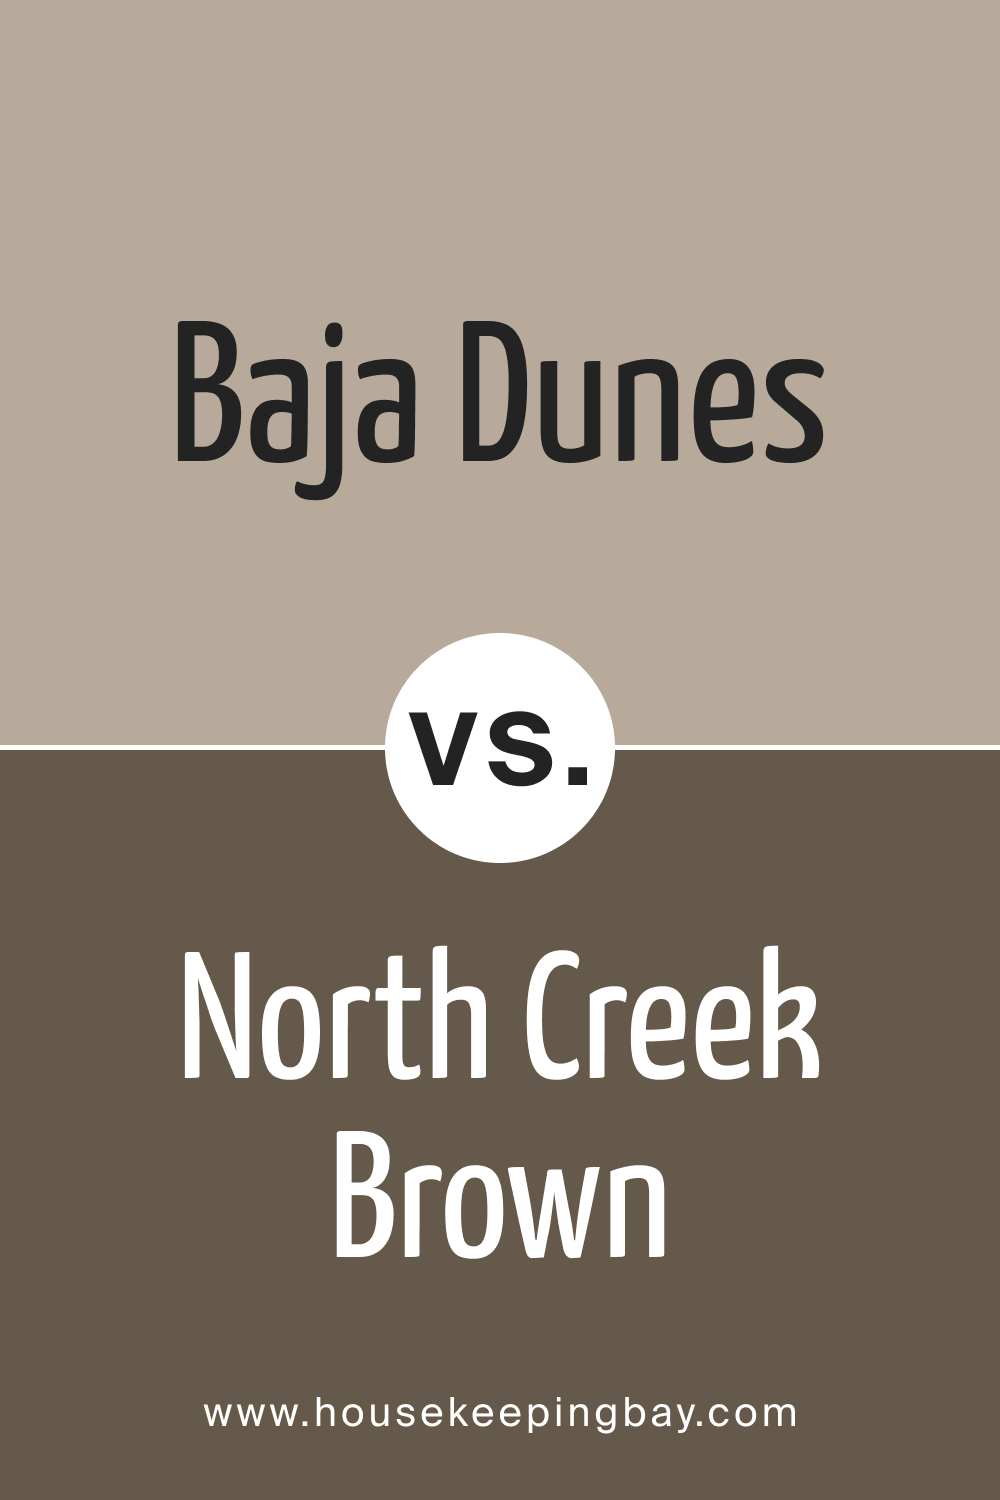 BM Baja Dunes 997 vs. BM 1001 North Creek Brown